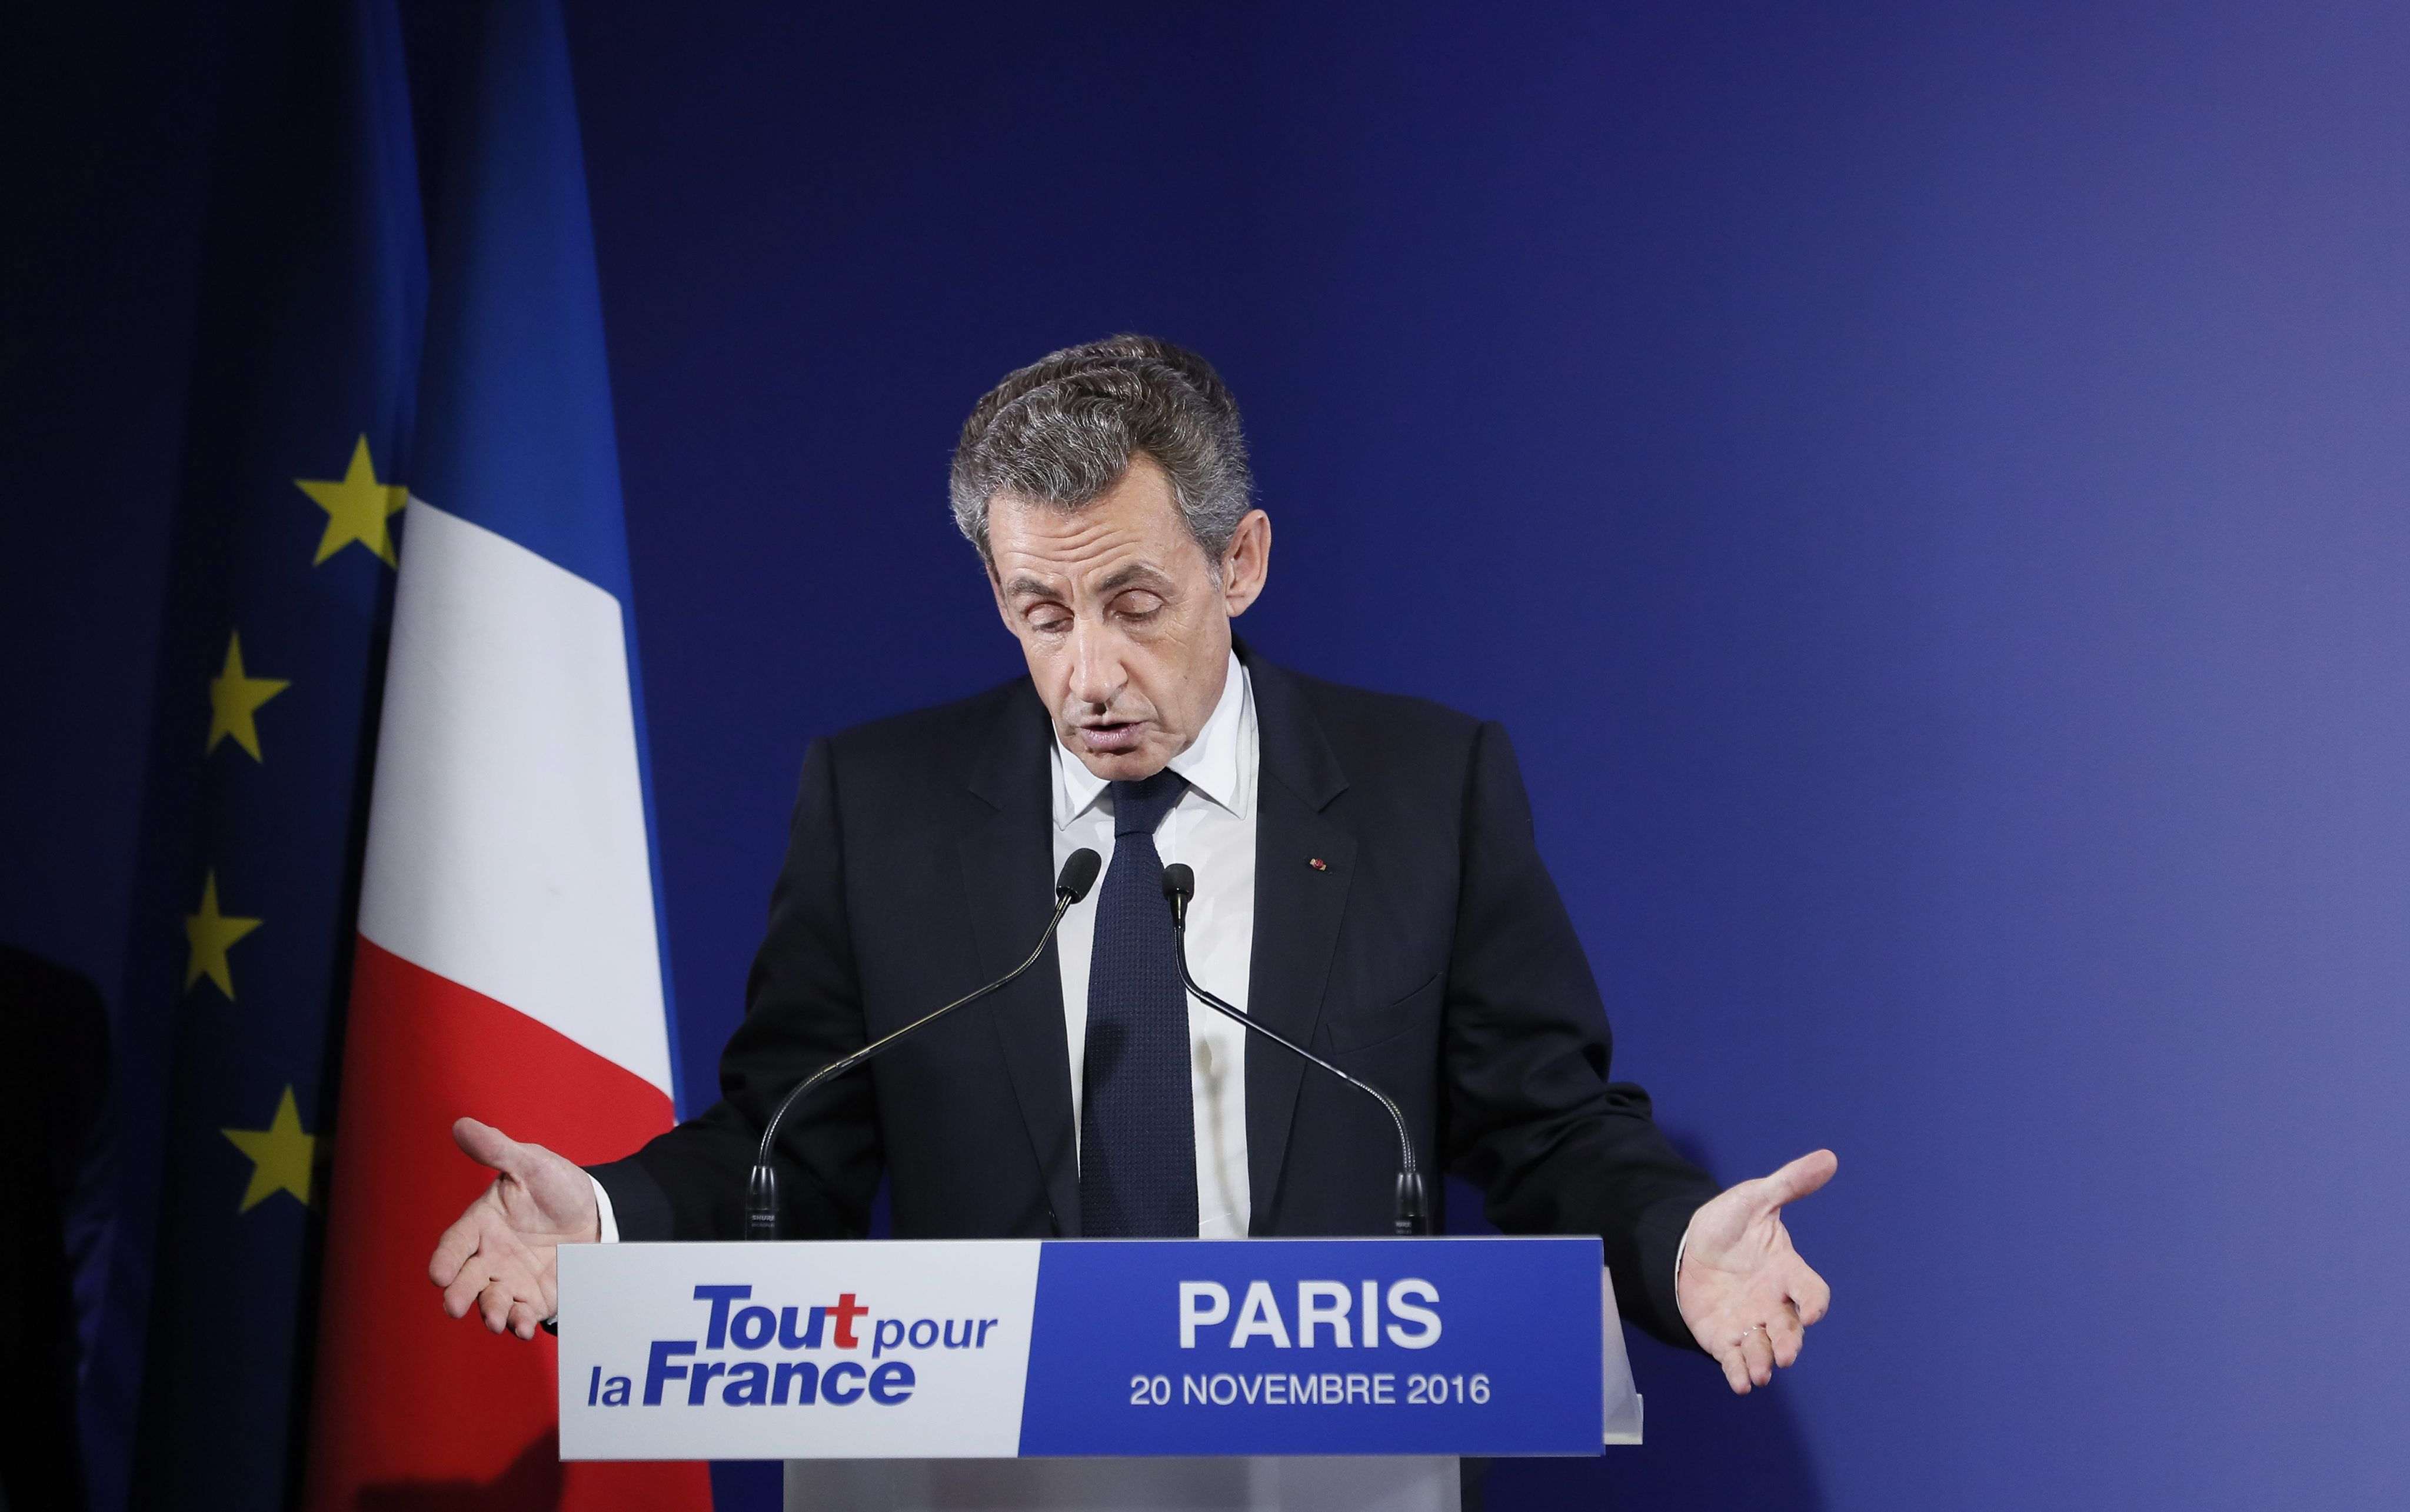 Empieza el juicio a Sarkozy, pero se aplaza inmediatamente después